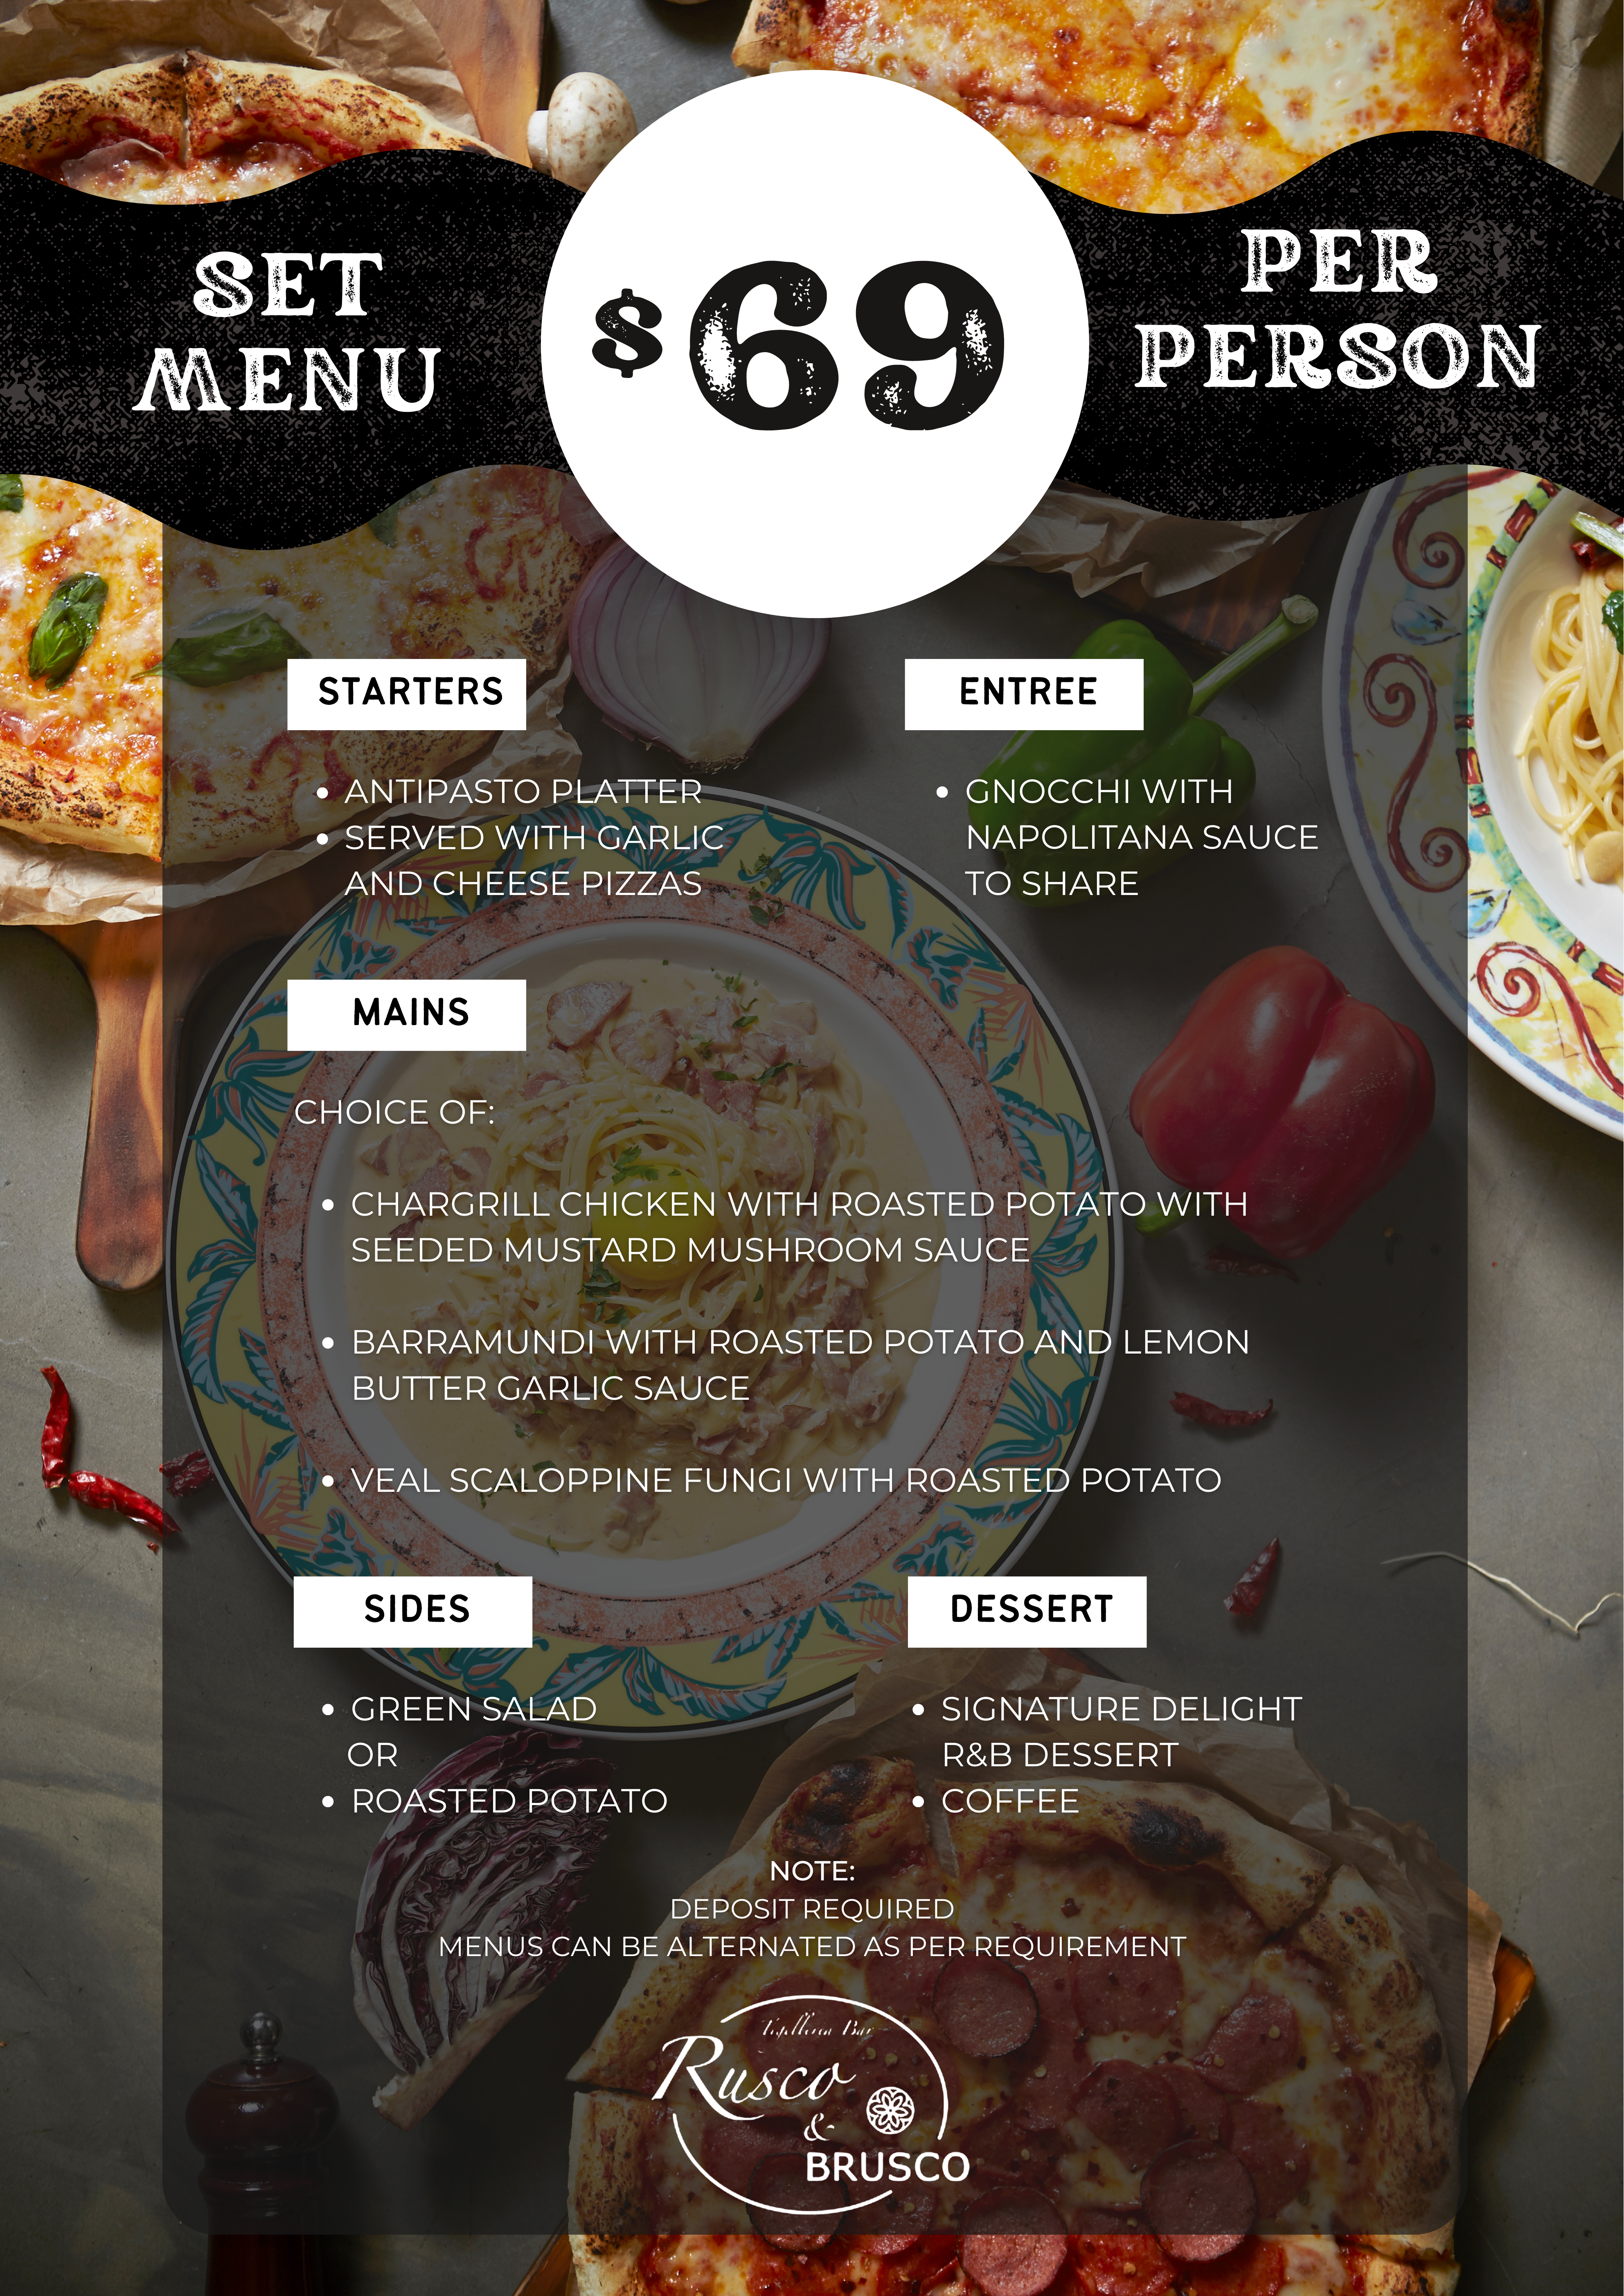 Rusco brusco set menu @ $69.00 